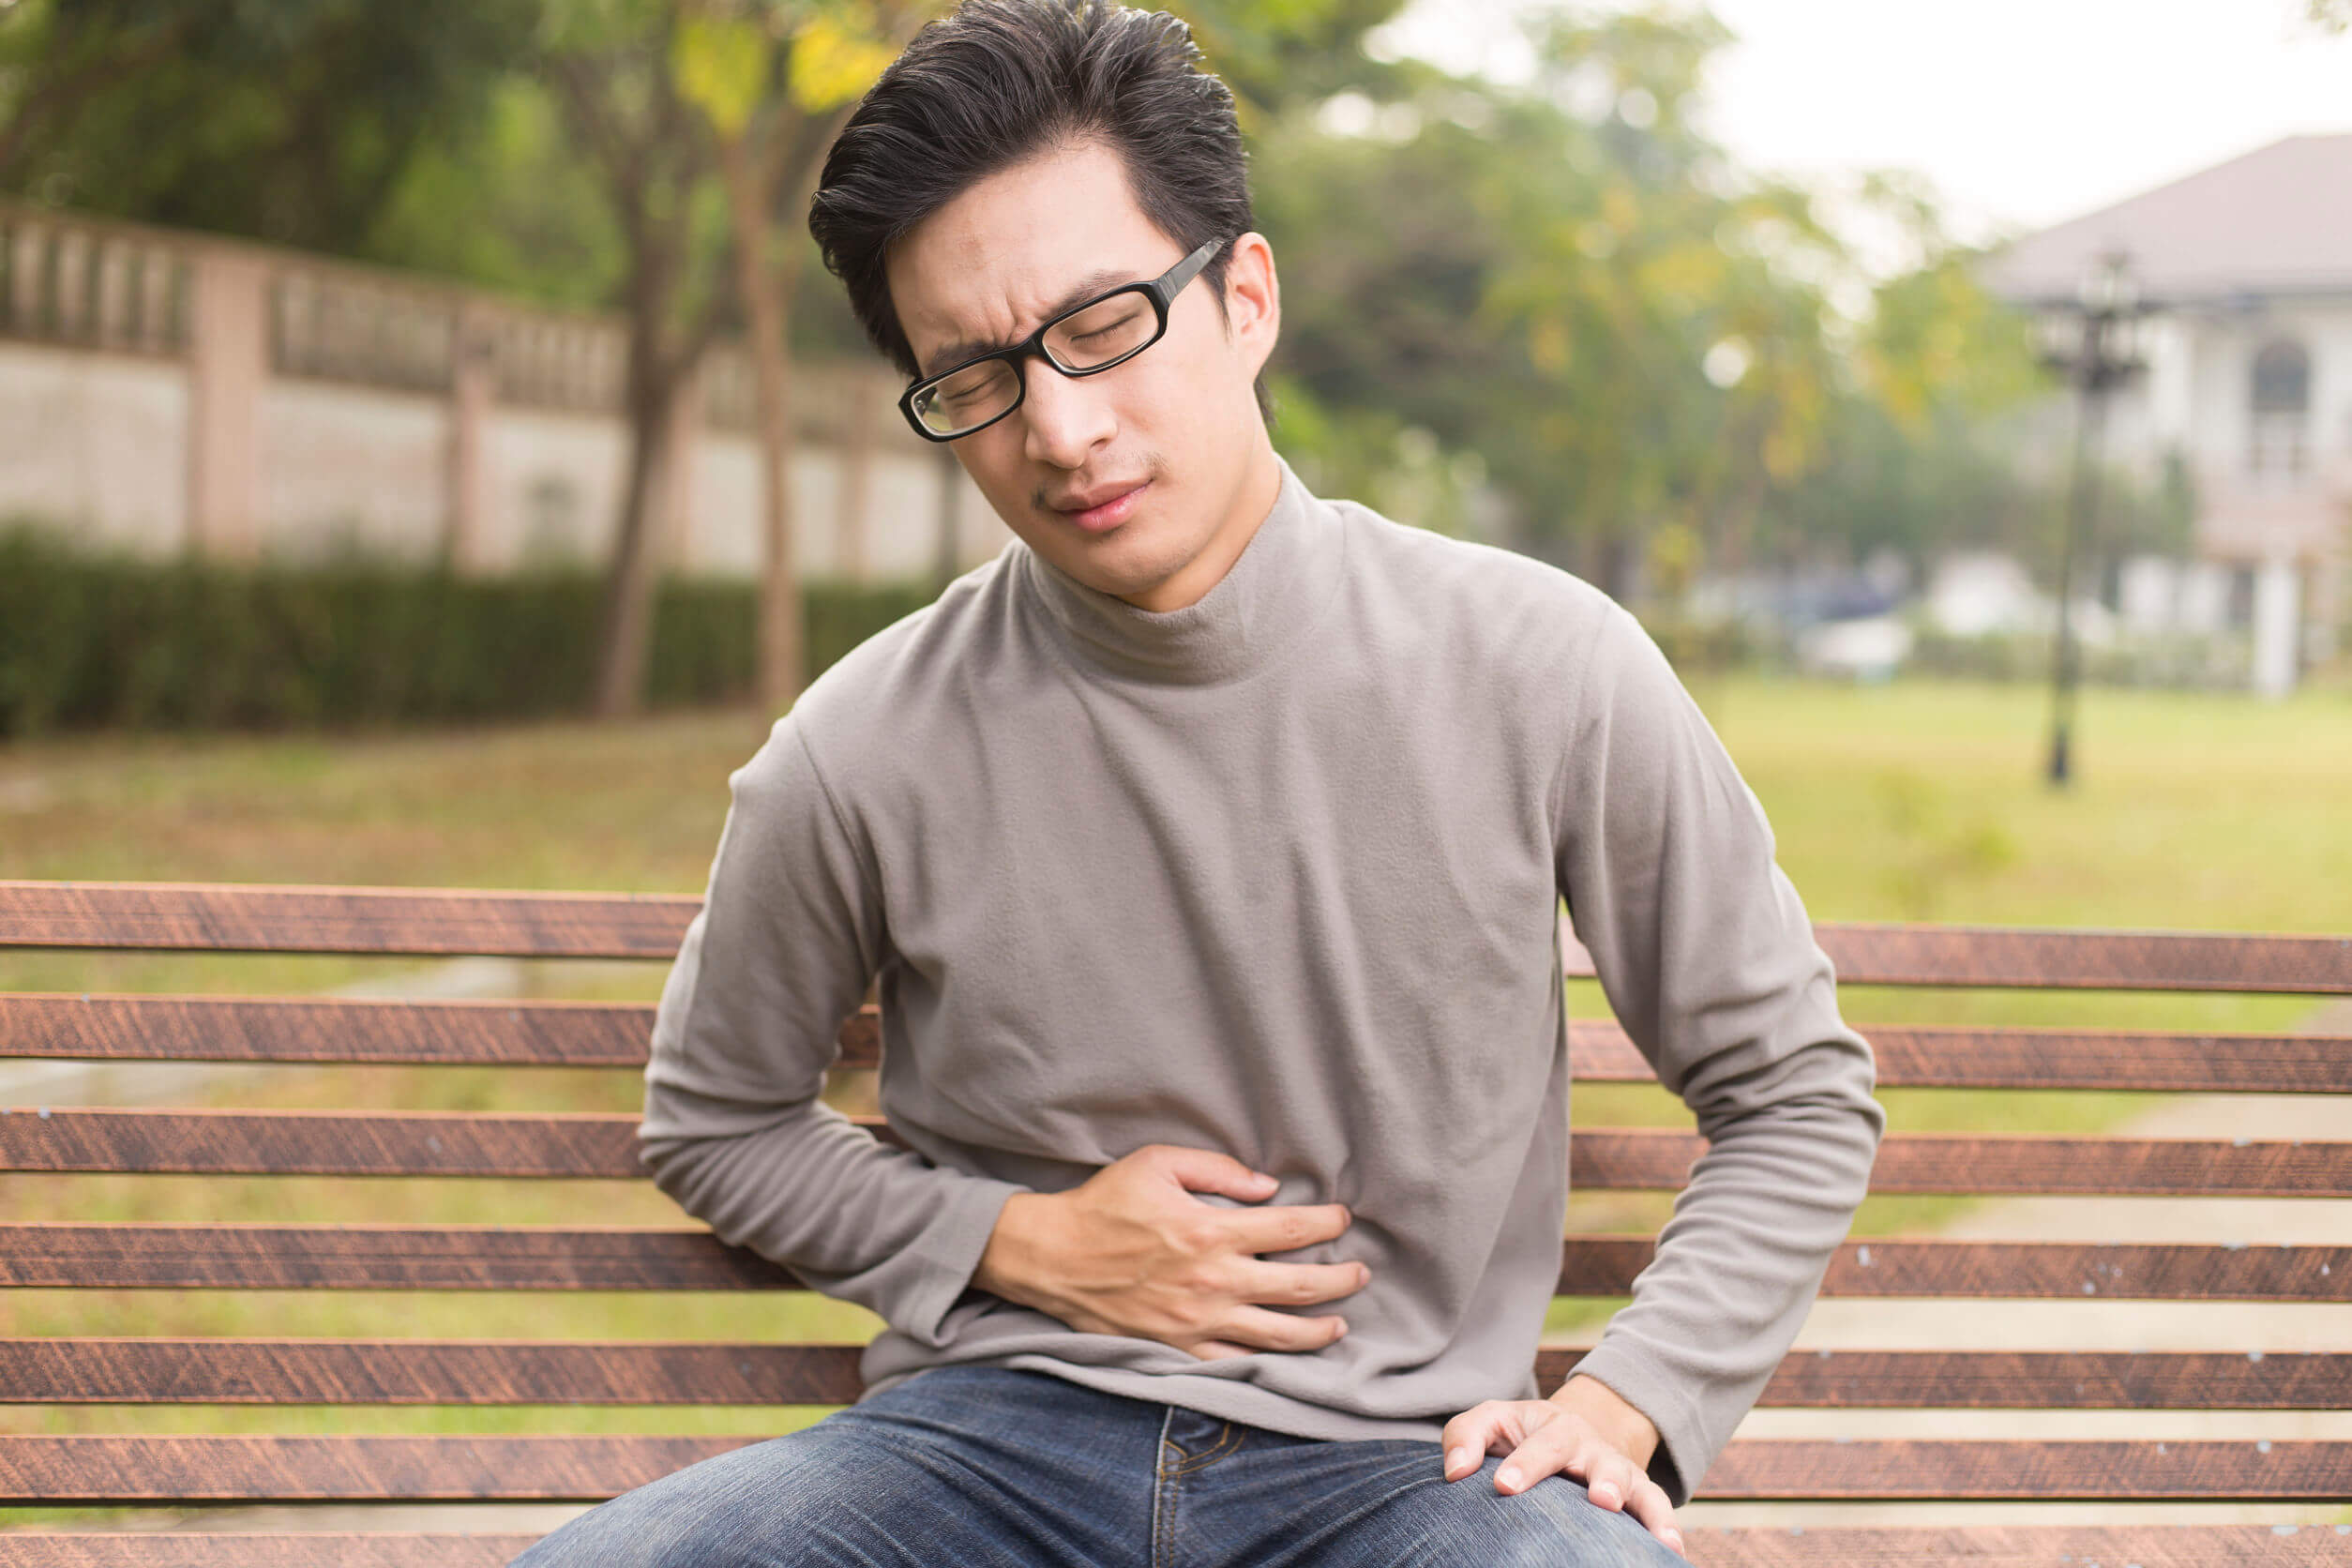 La venlafaxina ha tra gli effetti secondari disturbi gastrointestinali